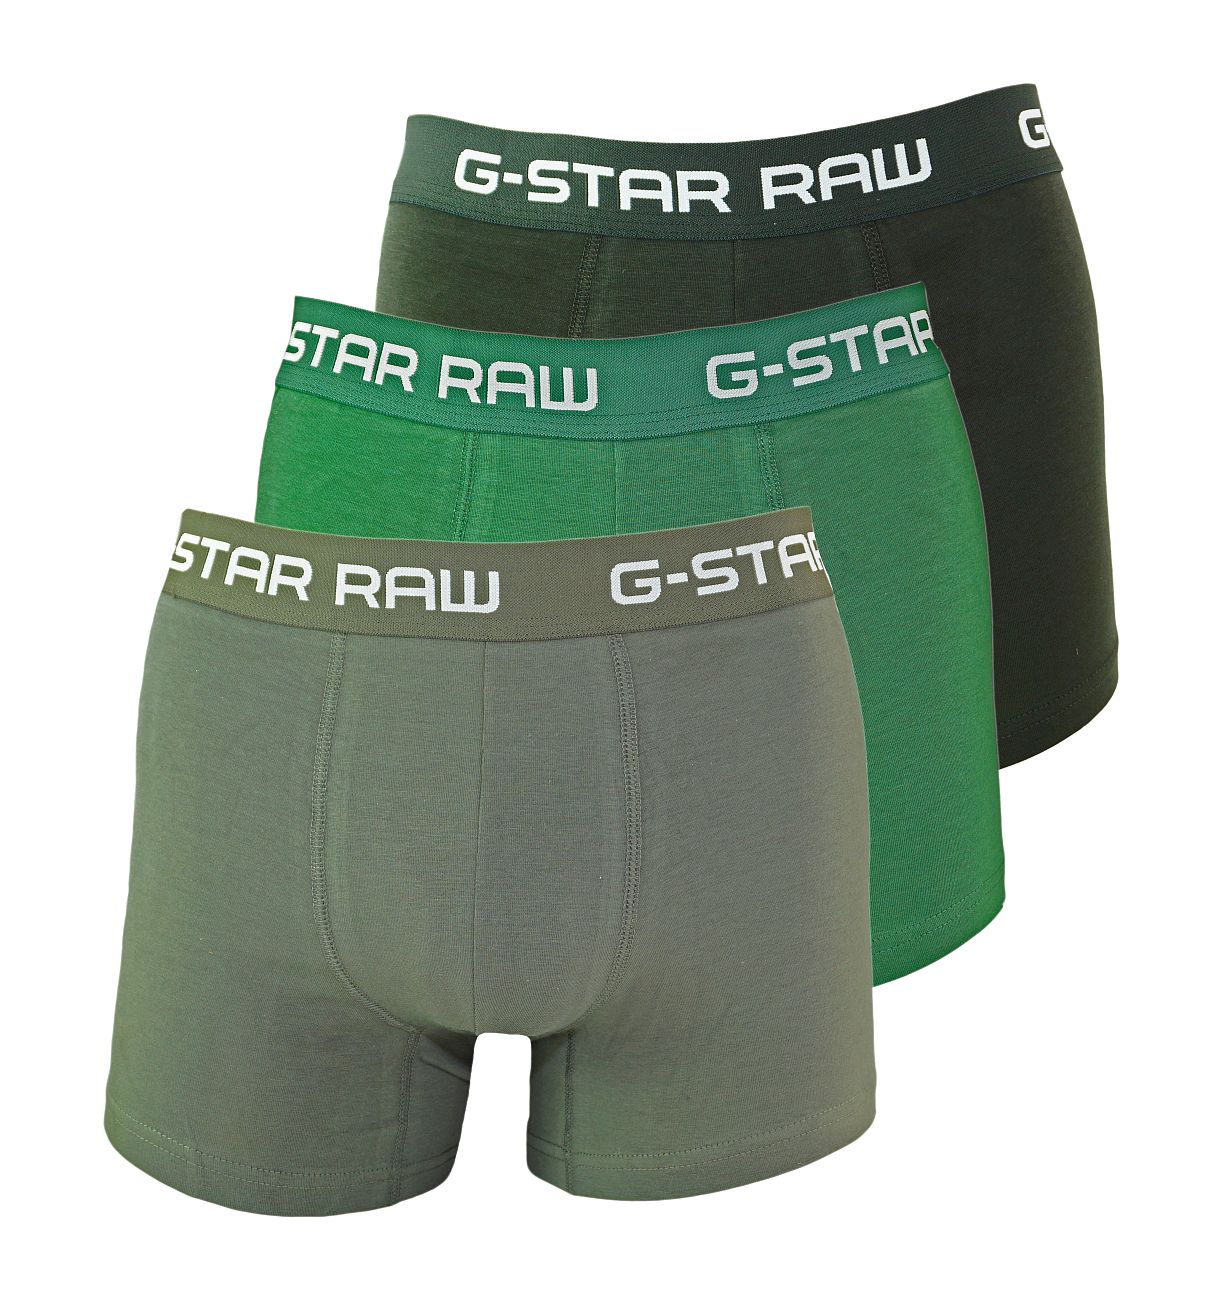 G-Star RAW 3er Pack Trunks D05095-2058-8529 Gs Grey Asfalt Bright Jungle F18-GSS1